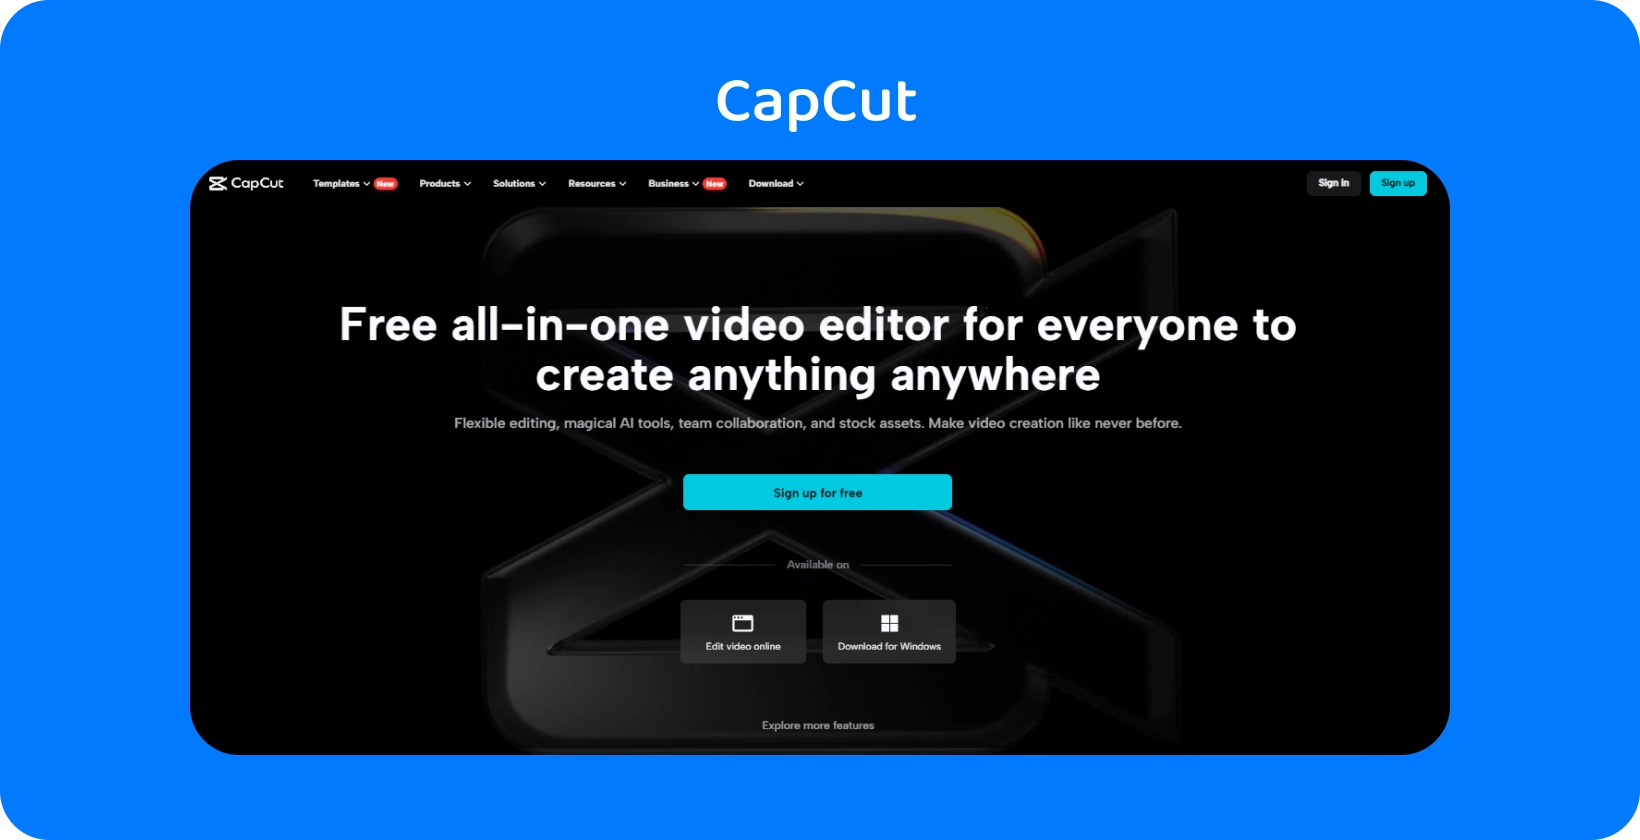 Домашня сторінка CapCut демонструє безкоштовний універсальний відеоредактор для створення контенту на будь-якому пристрої з темним і елегантним дизайном.
